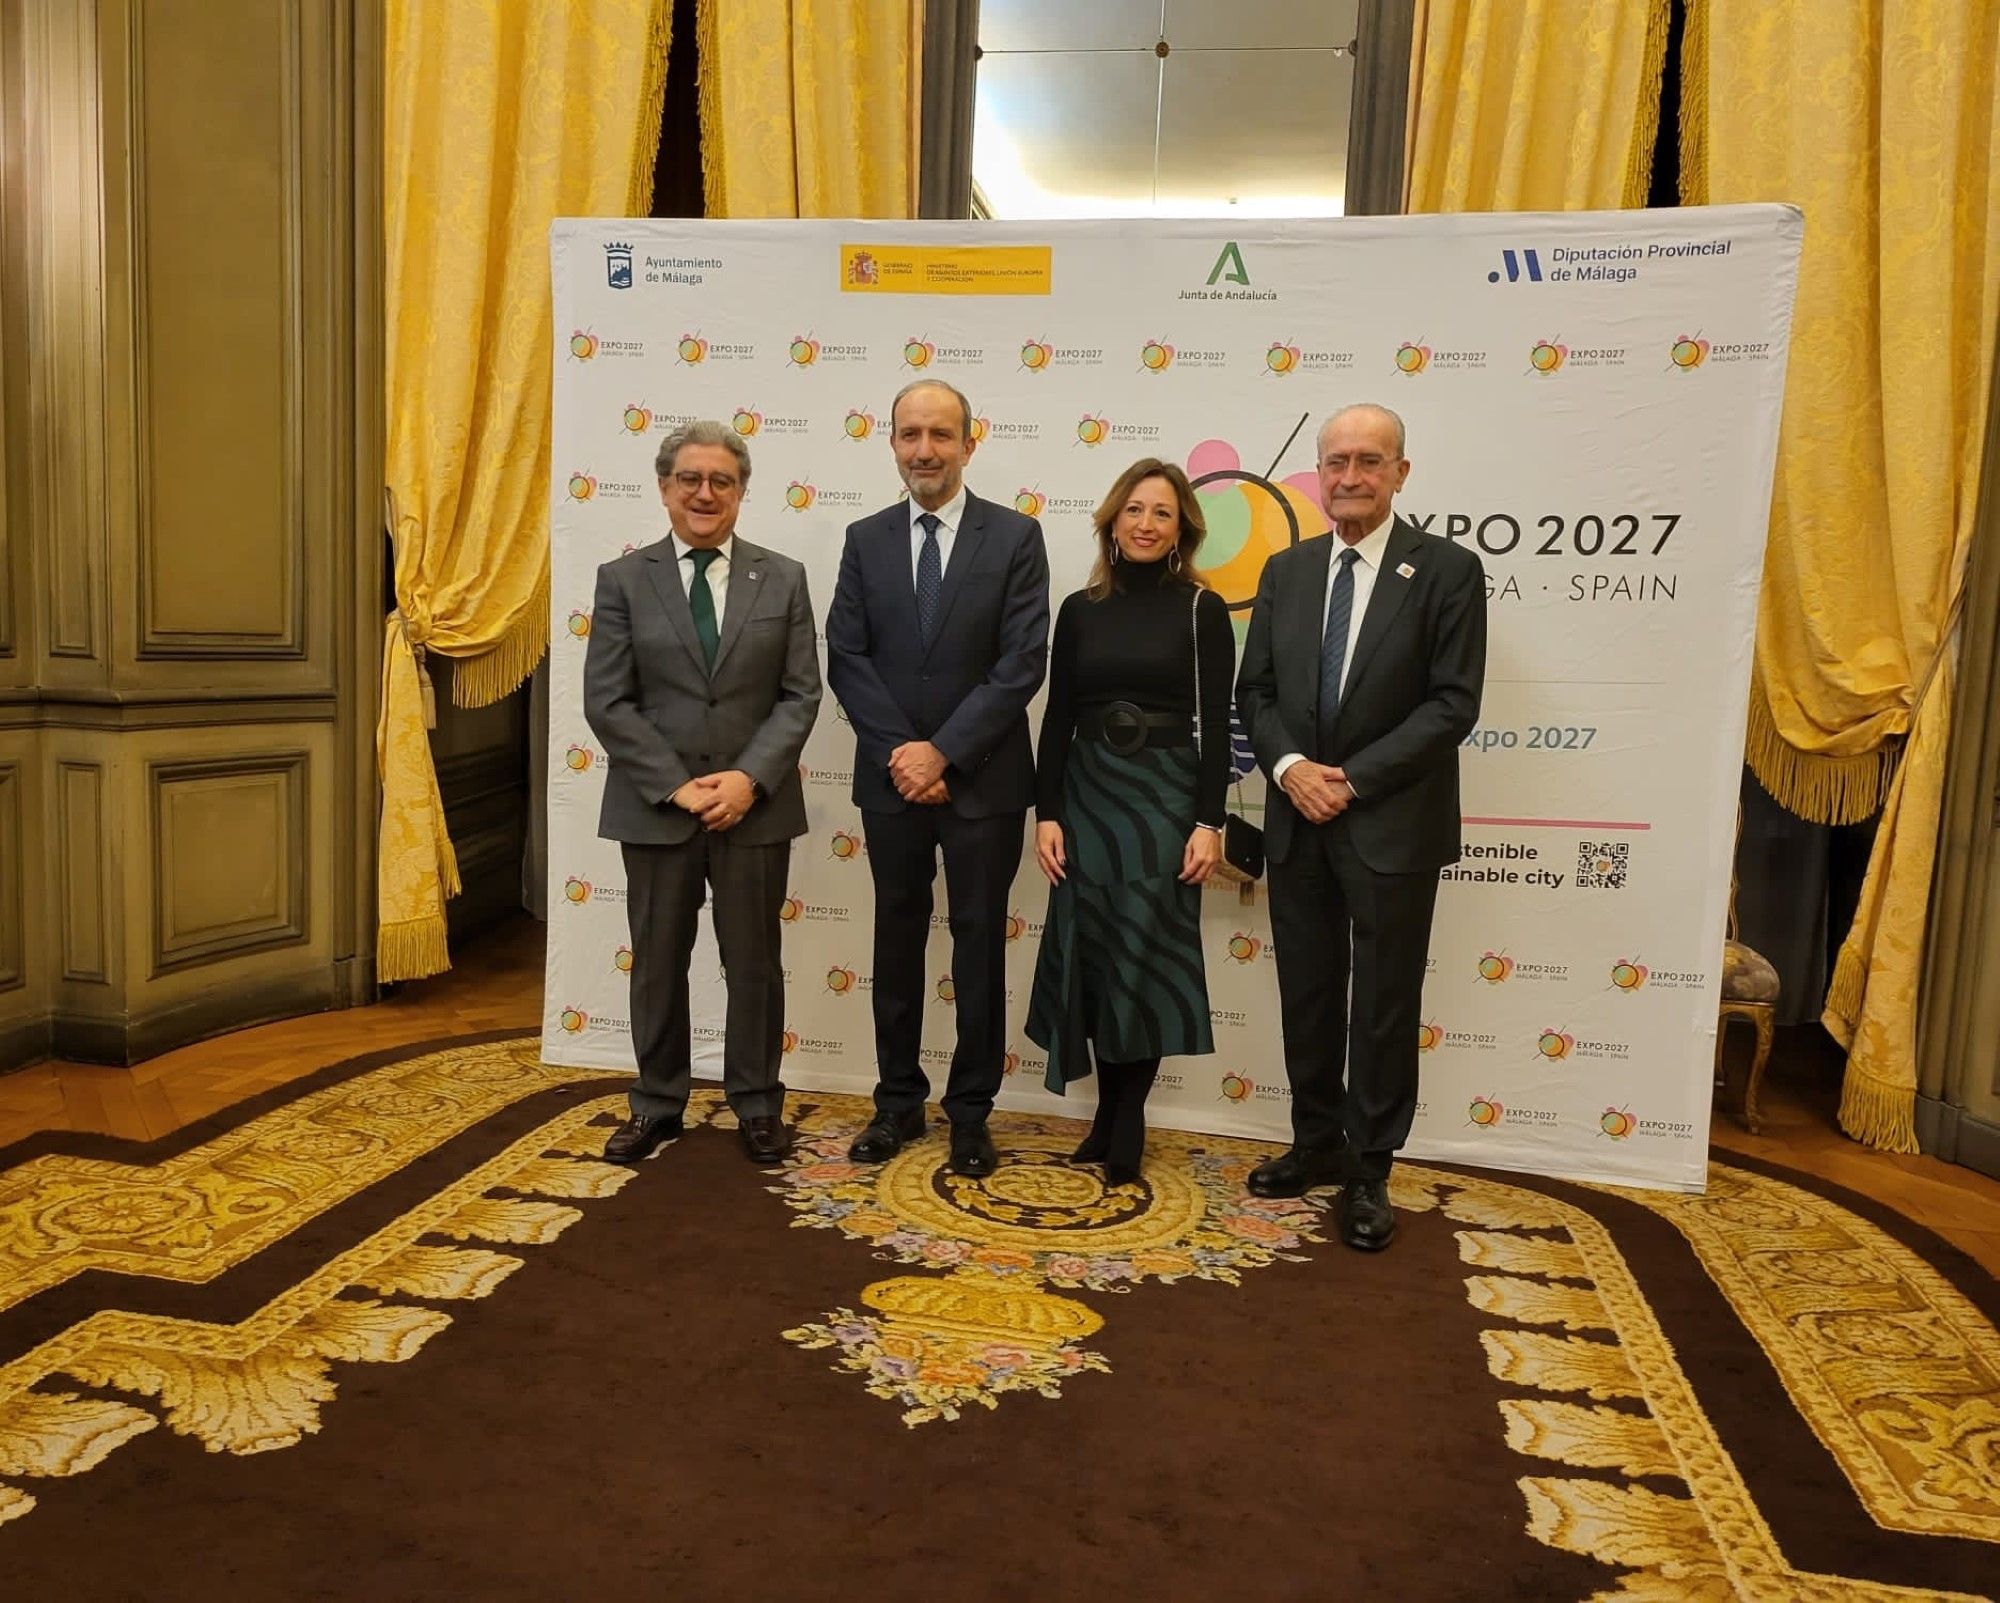 Recepción en la Residencia de la Embajada de España en París, con motivo de la candidatura de Málaga a la Expo 2027